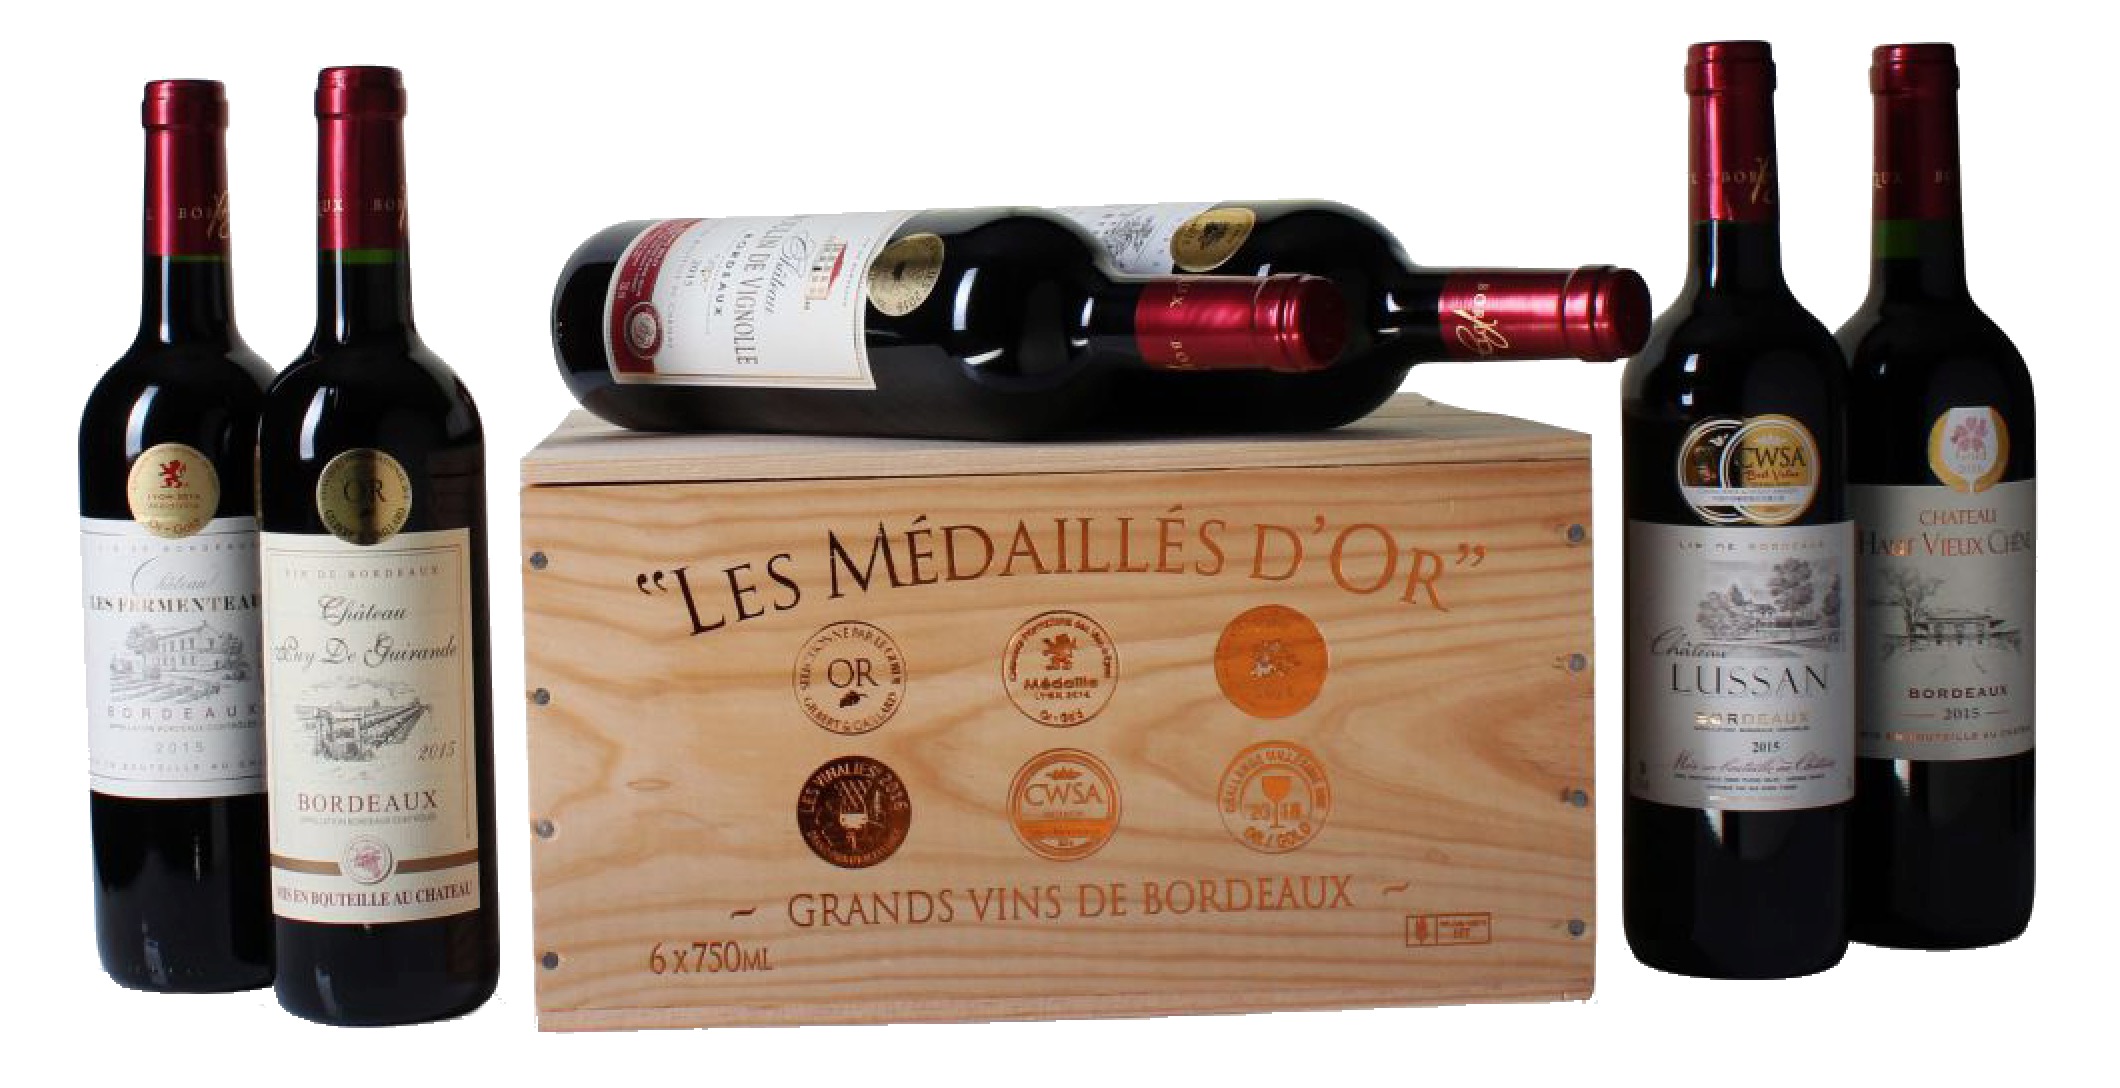 Goldprämierte Bordeaux-Selektion mit 6 verschiedenen Weinen in Holzkiste für nur 46,94 Euro